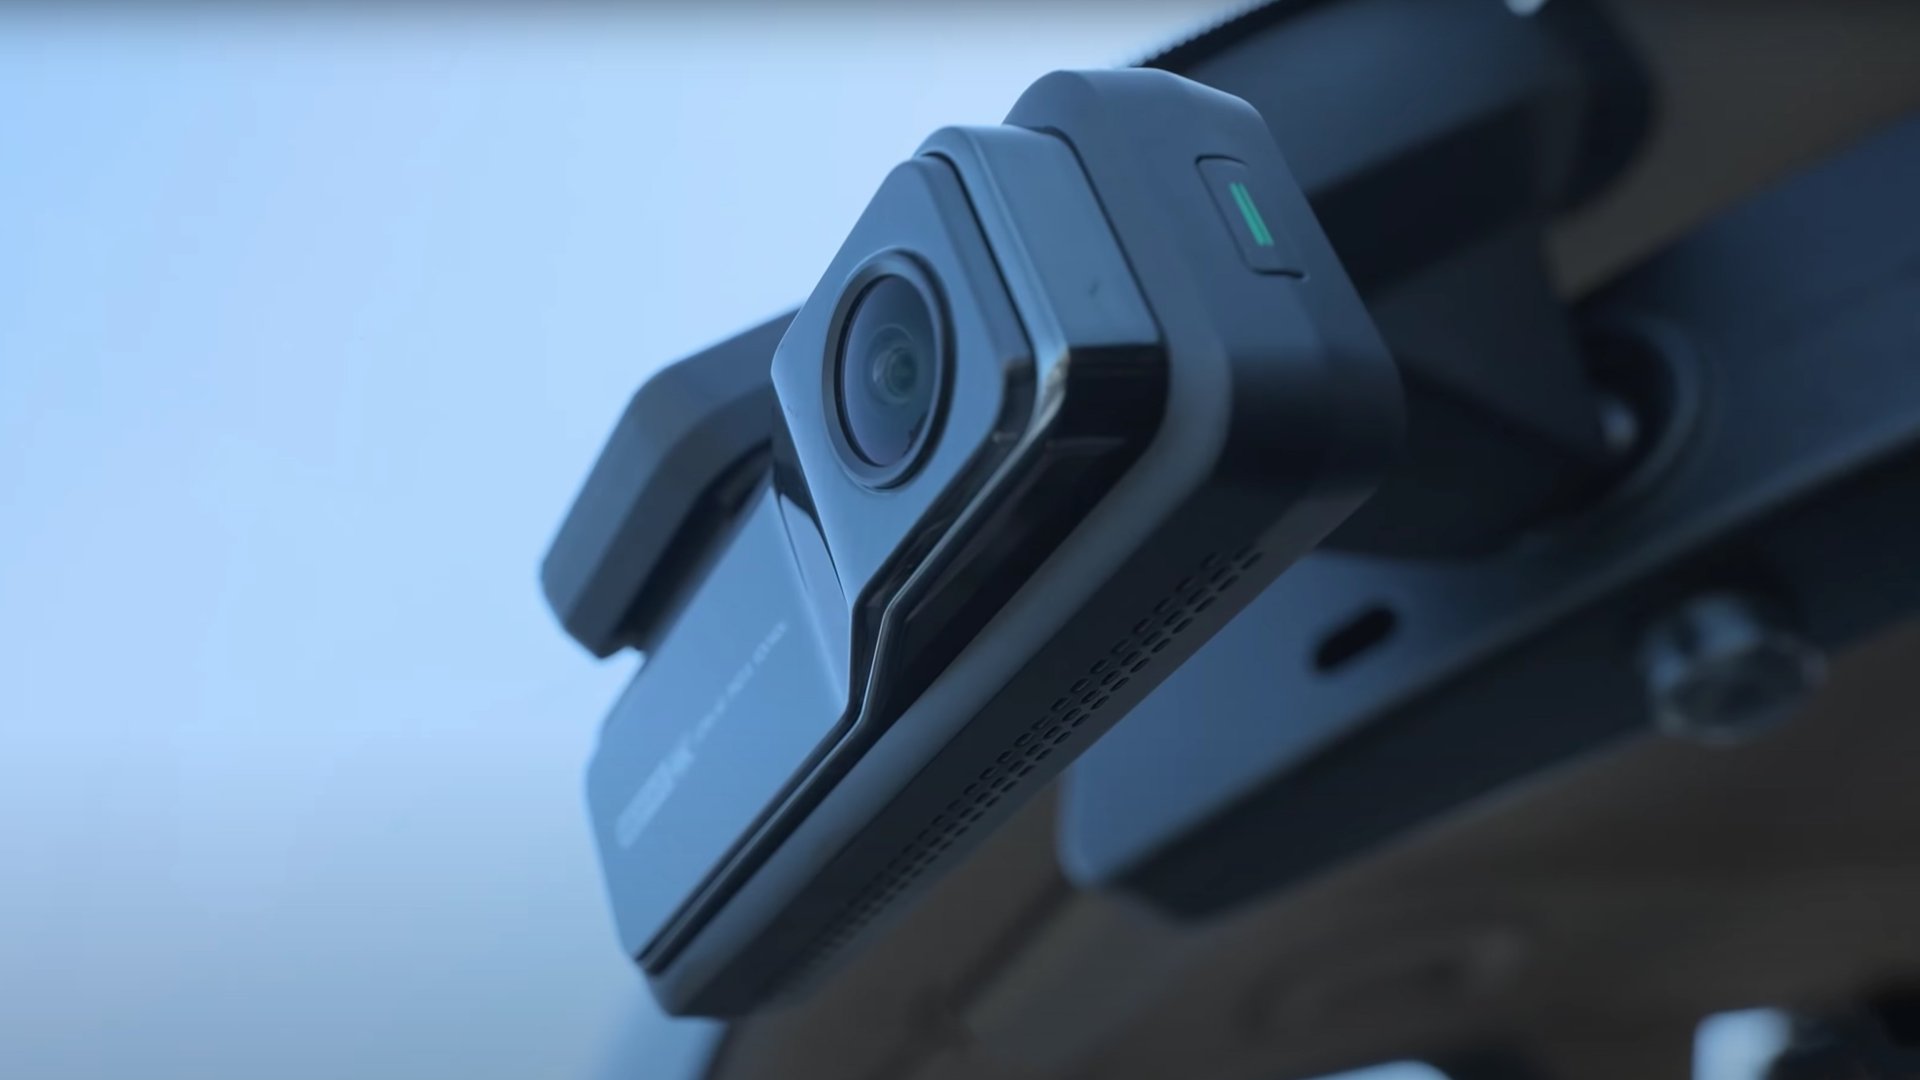 Die Mioive 4K-Dashcam ist an der Windschutzscheibe eines Autos montiert